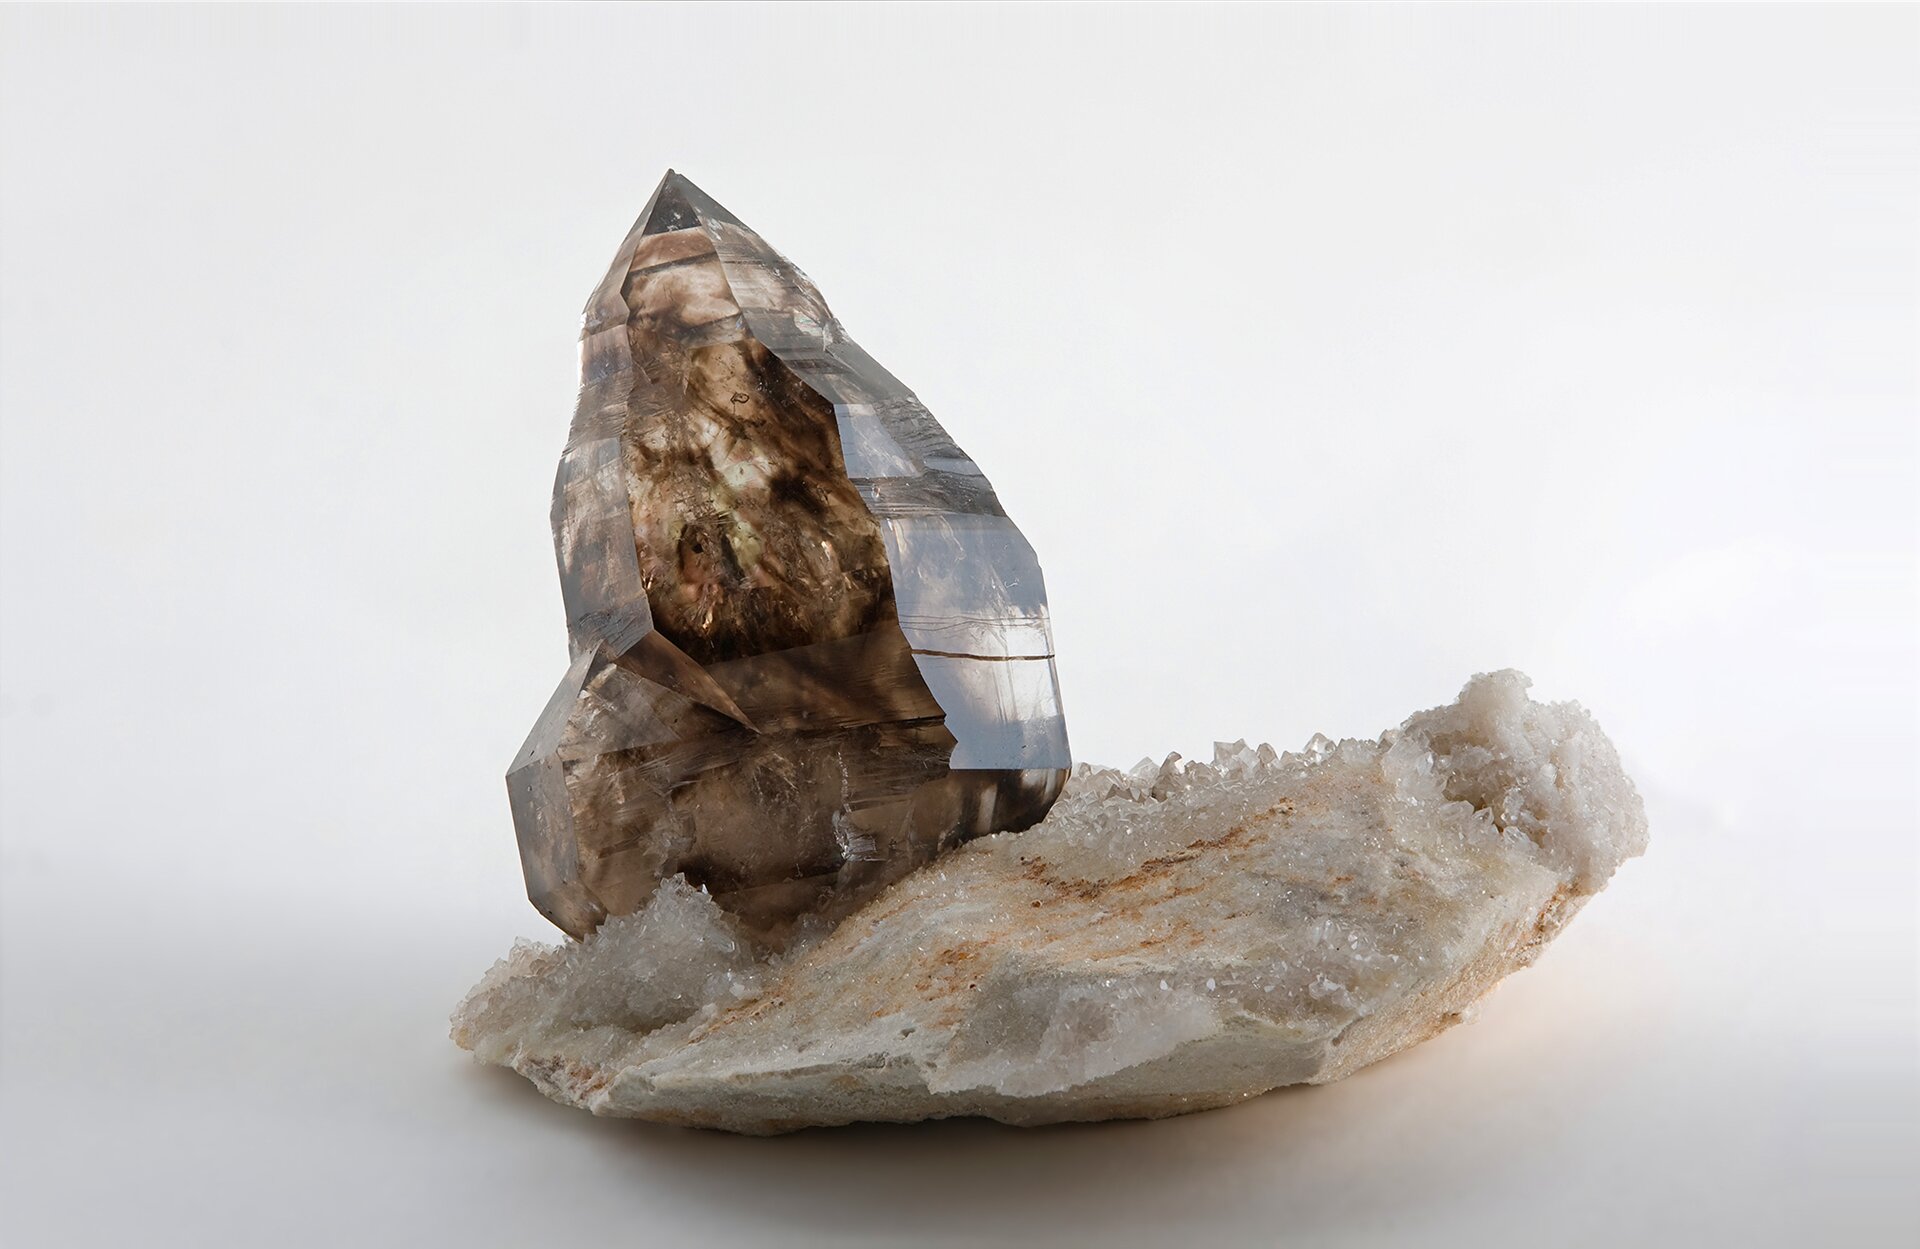 Zdjęcie przedstawia brązowy kryształ kwarcu dymnego w postaci pojedynczego słupka na białej podstawie mineralnej pokrytej drobnymi białymi kryształkami. Tło białe.